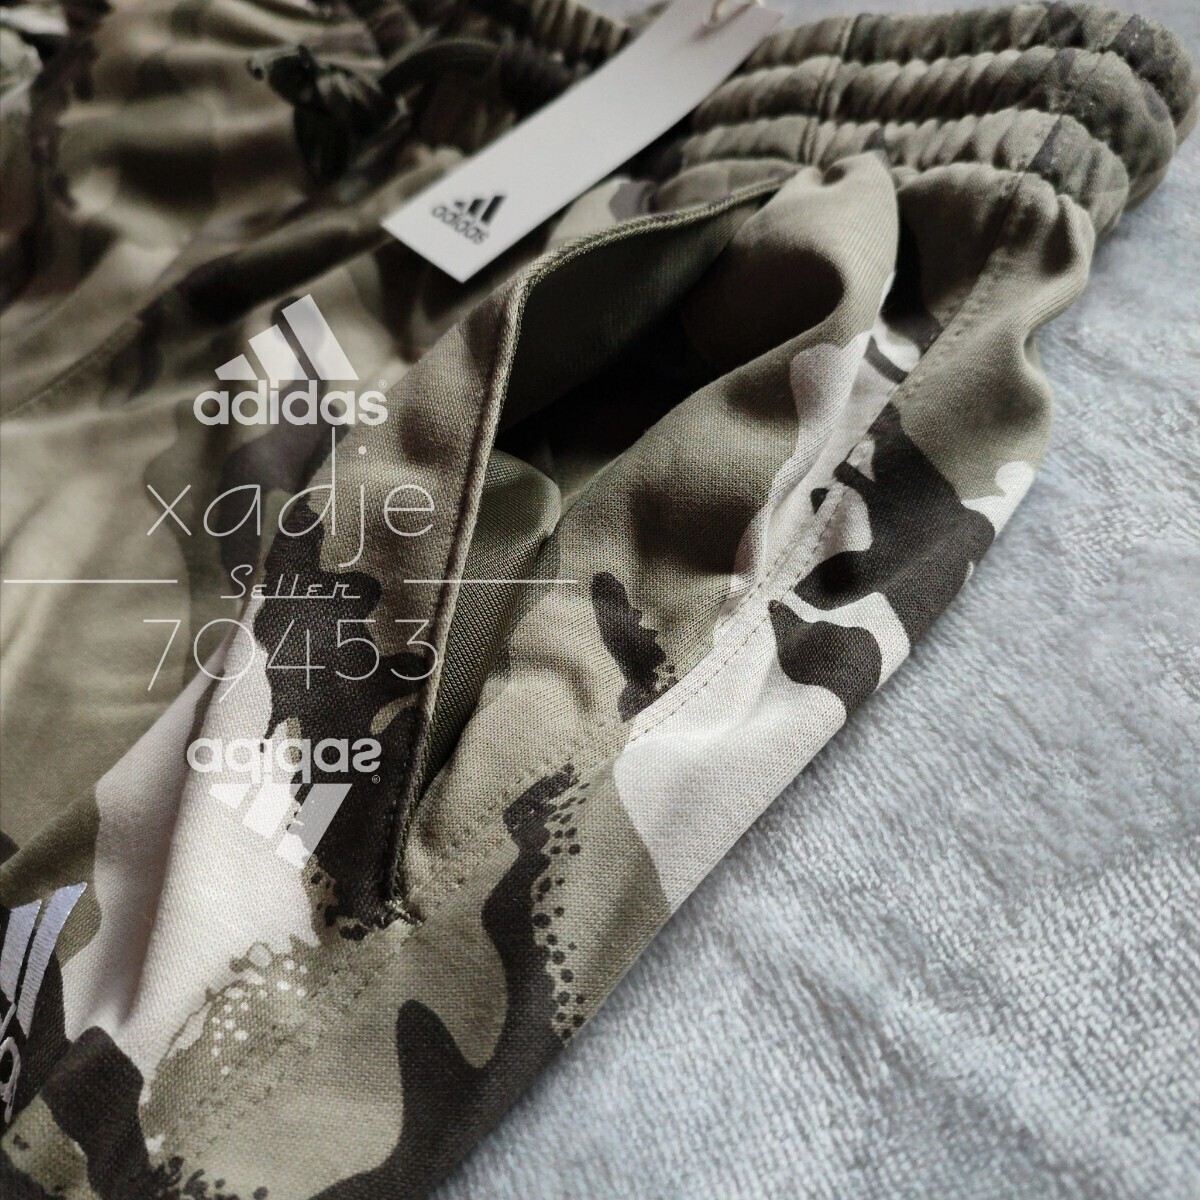 新品 正規品 adidas アディダス 上下セット スウェット セットアップ カーキ オリーブ 茶 ブラック ロゴ刺繍 総柄 迷彩 薄手 M_画像7